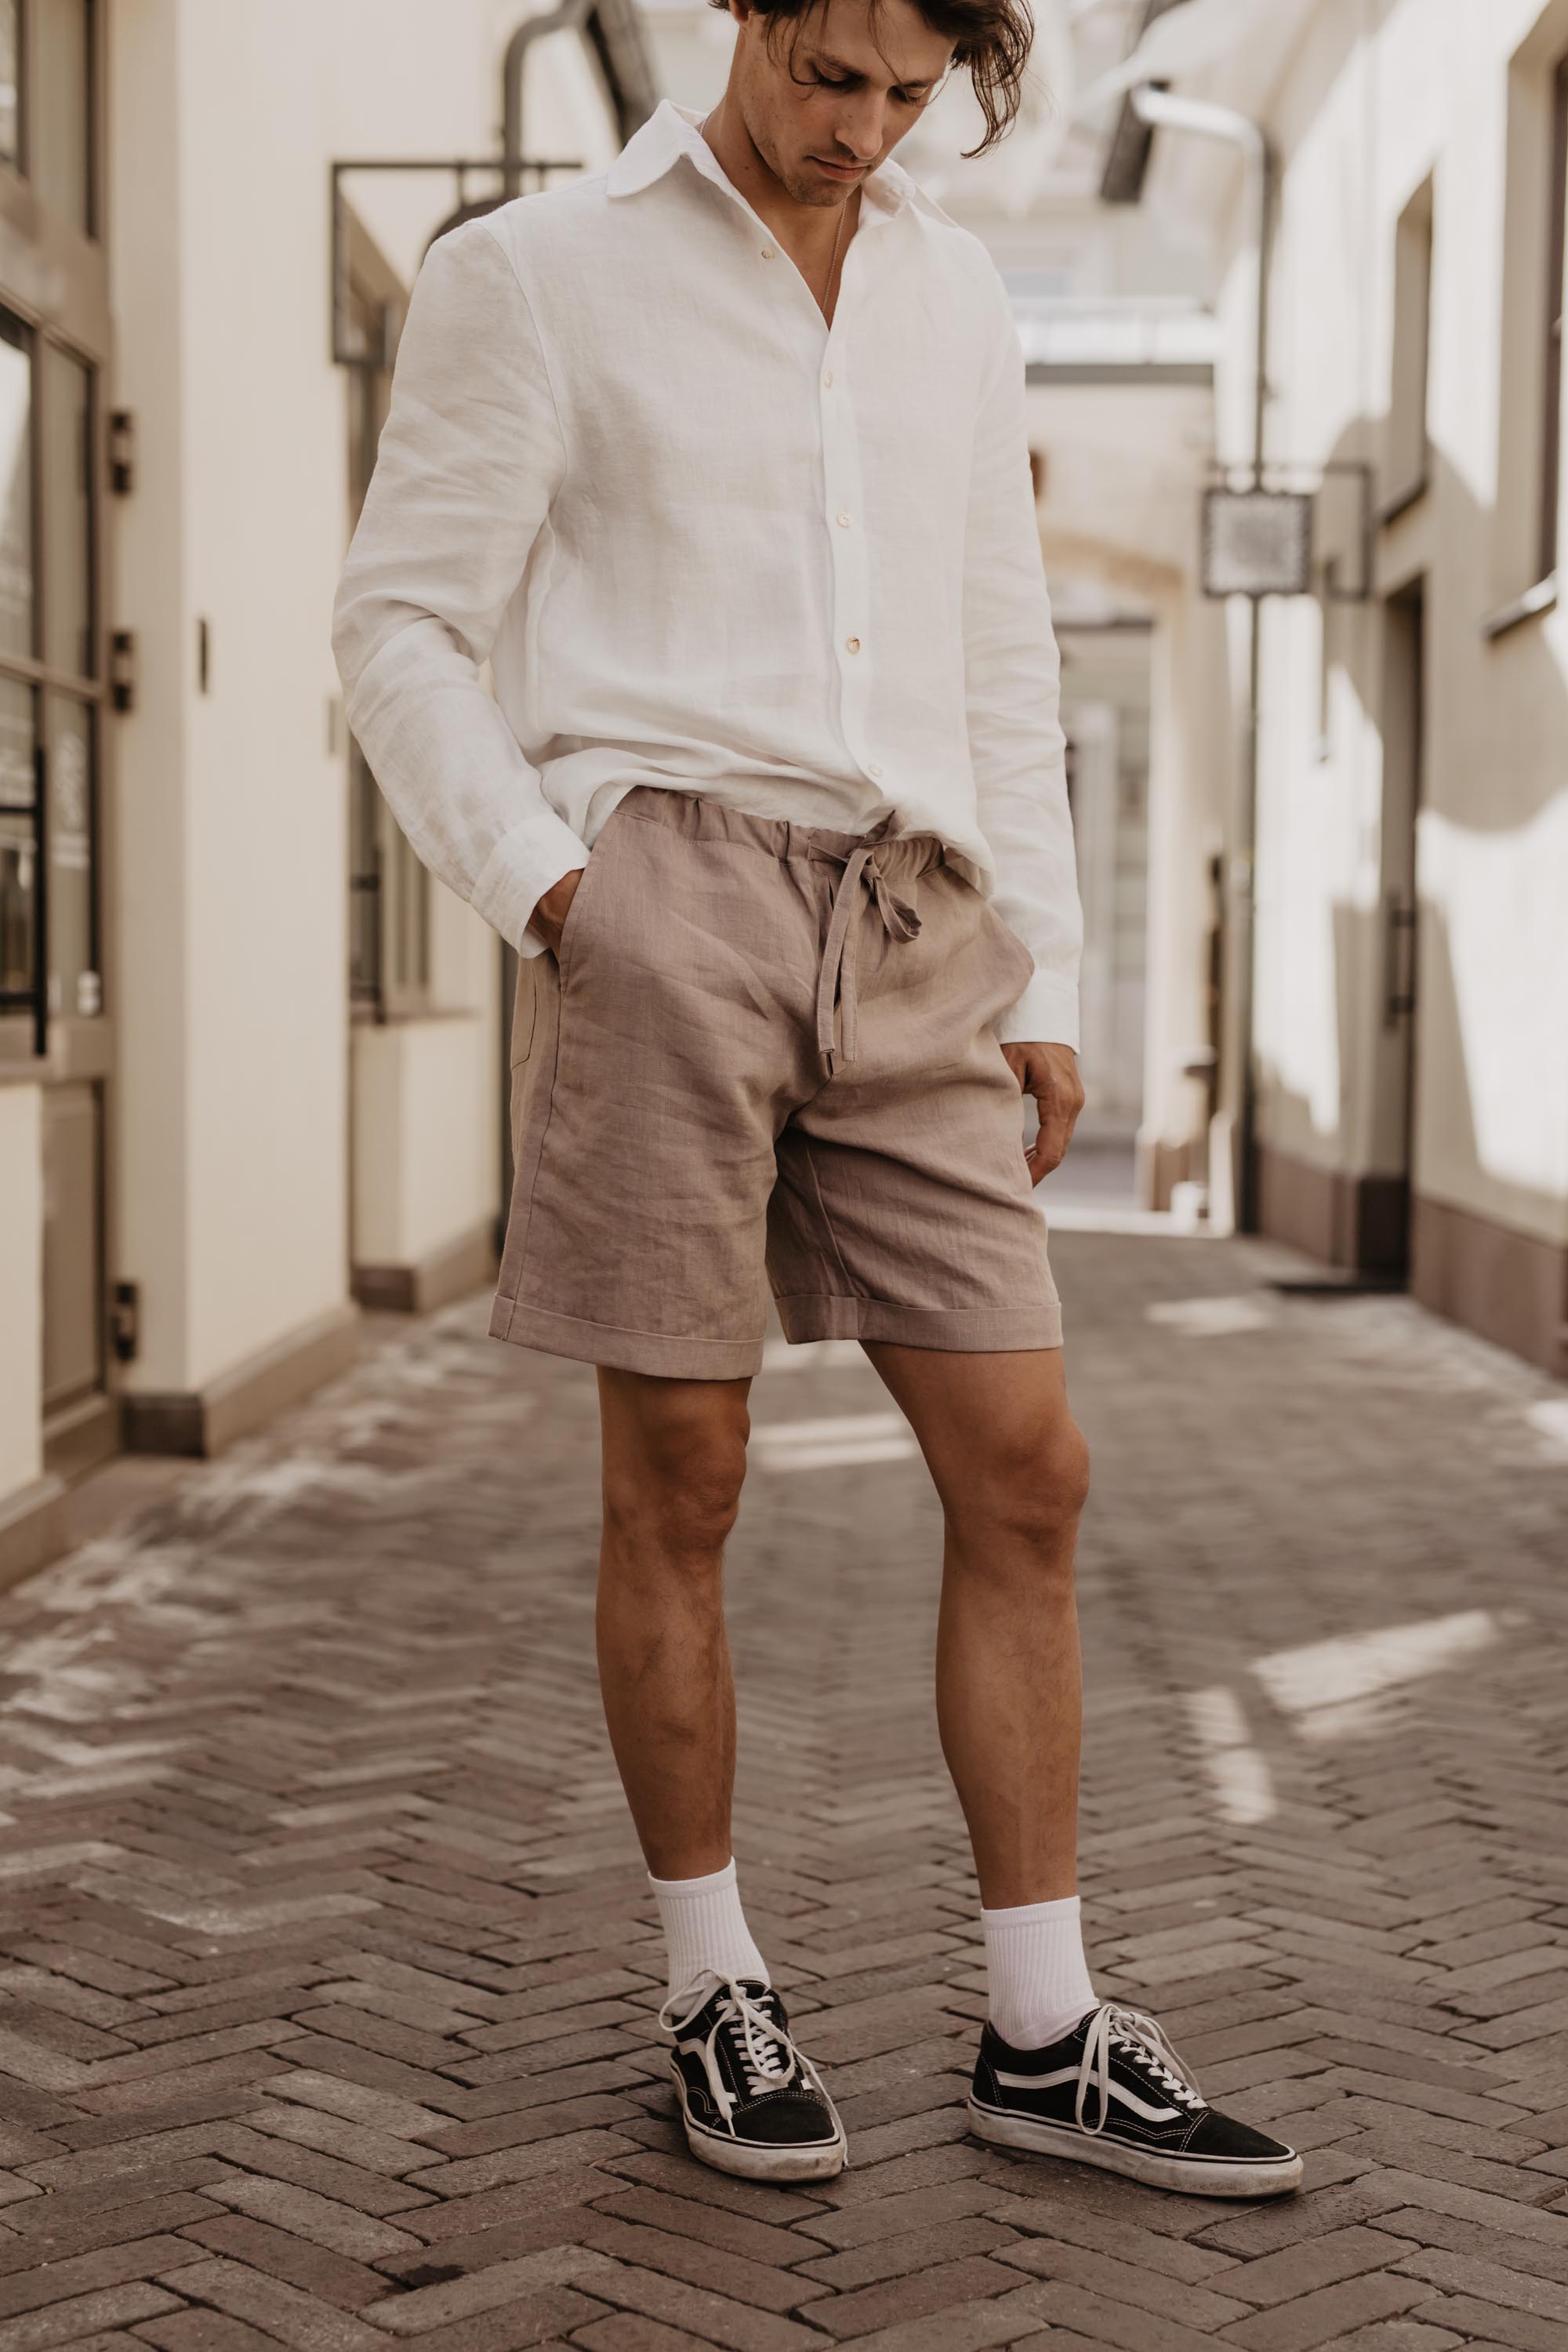 Man Wearing Dusty Rose Linen Shorts Looking Down